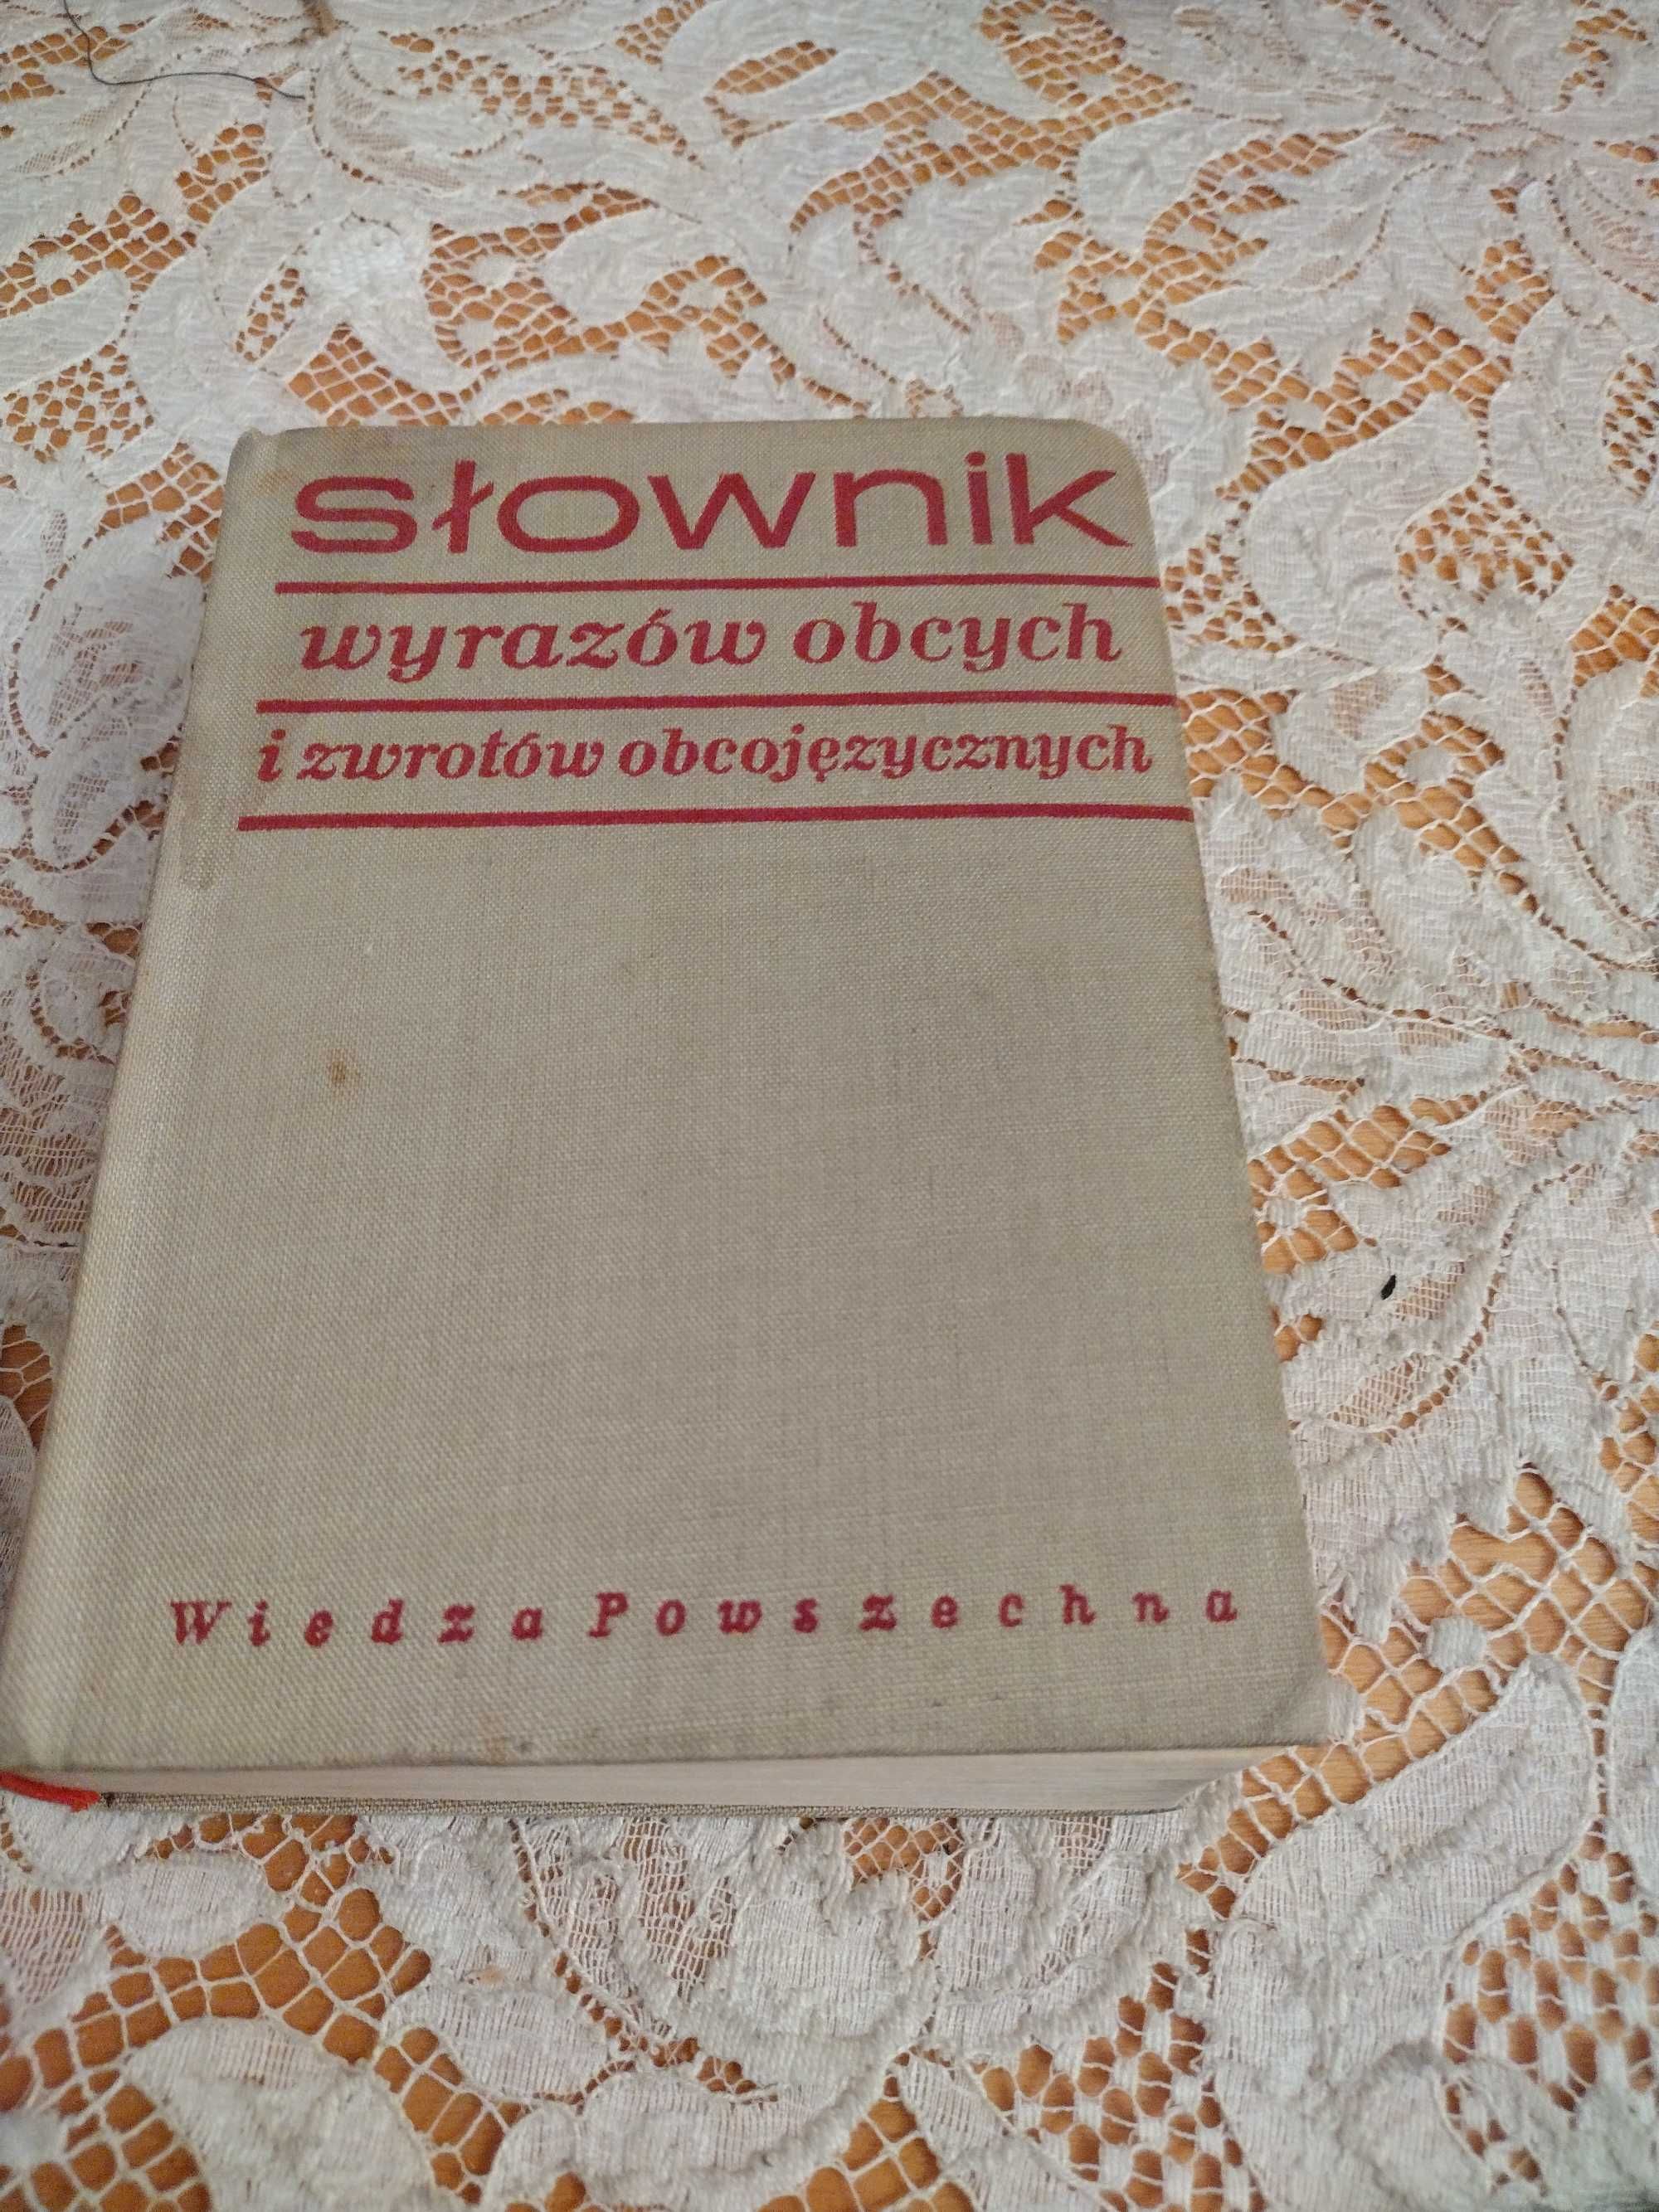 "Słownik wyrazów obcych i zwrotów obcojęzycznych" Władysław Kopaliński